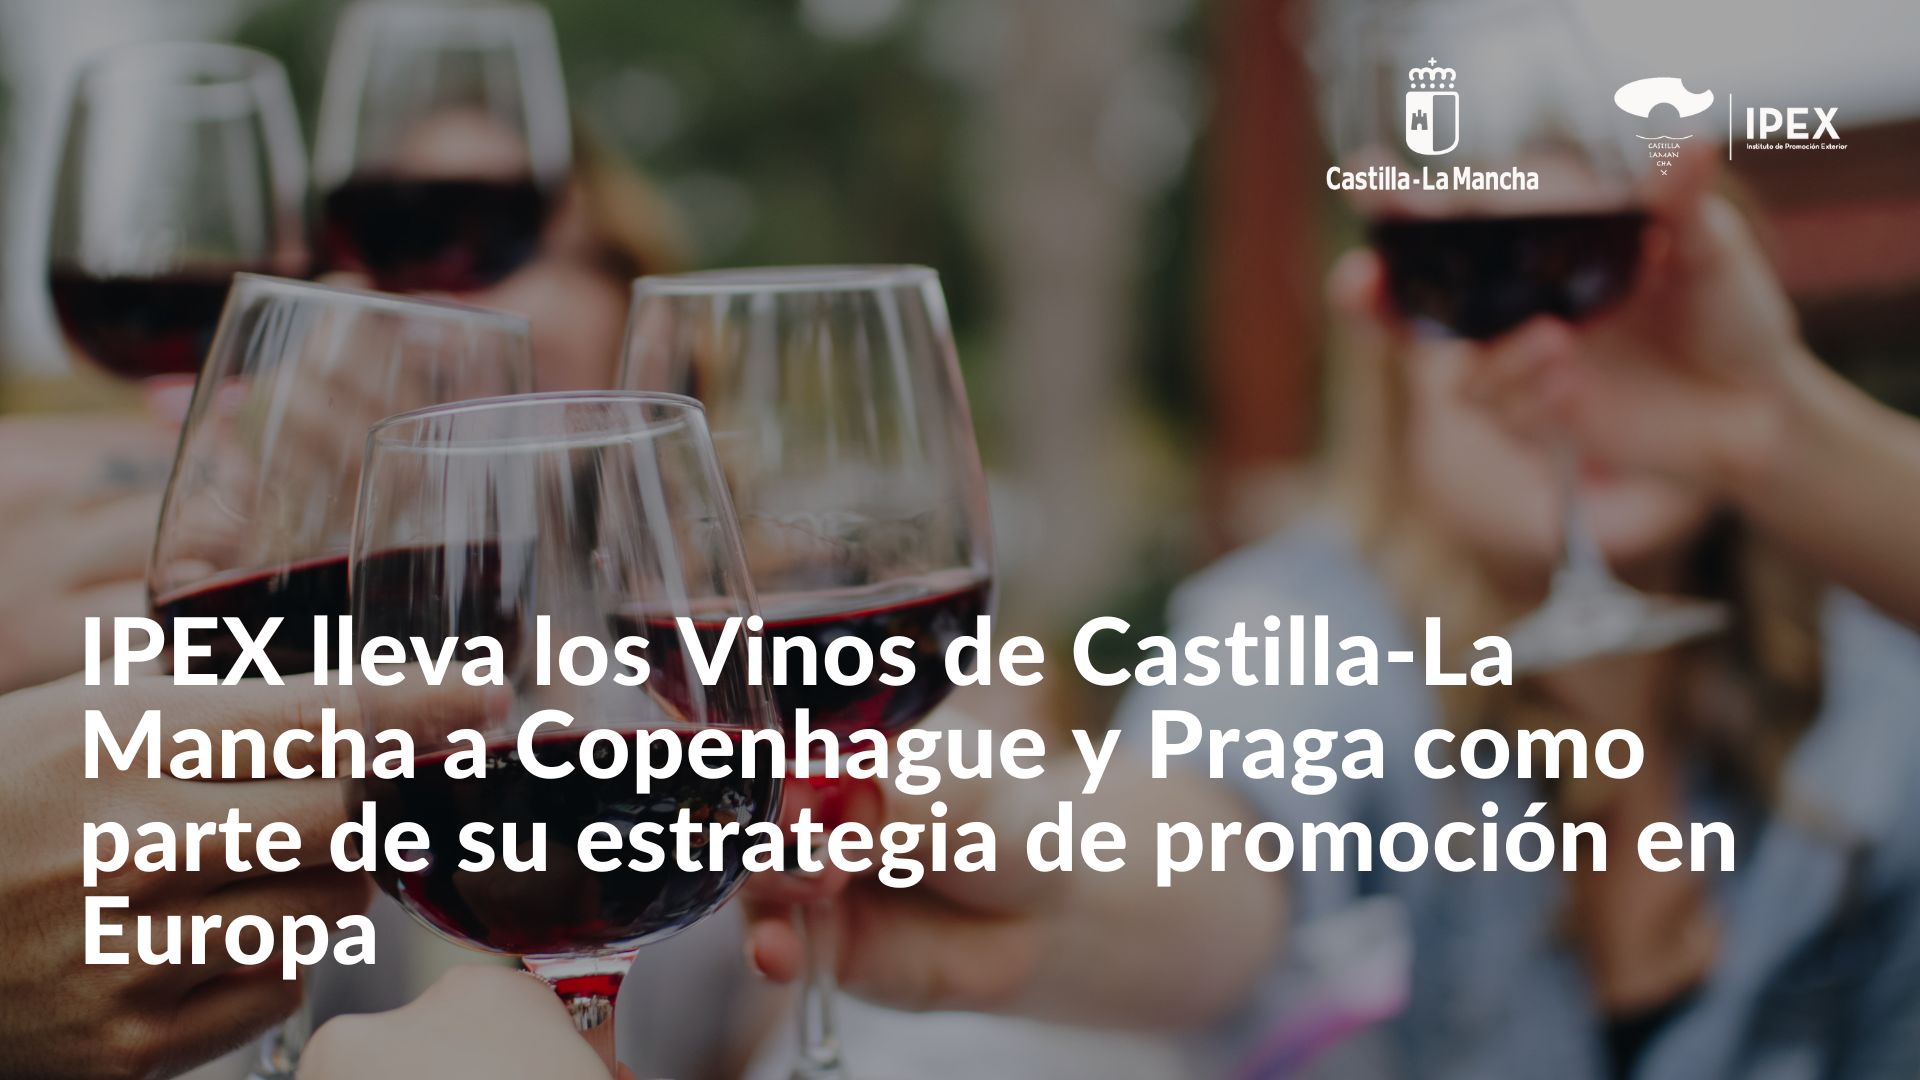 IPEX lleva los Vinos de Castilla-La Mancha a Copenhague y Praga como parte de su estrategia de promoción en Europa